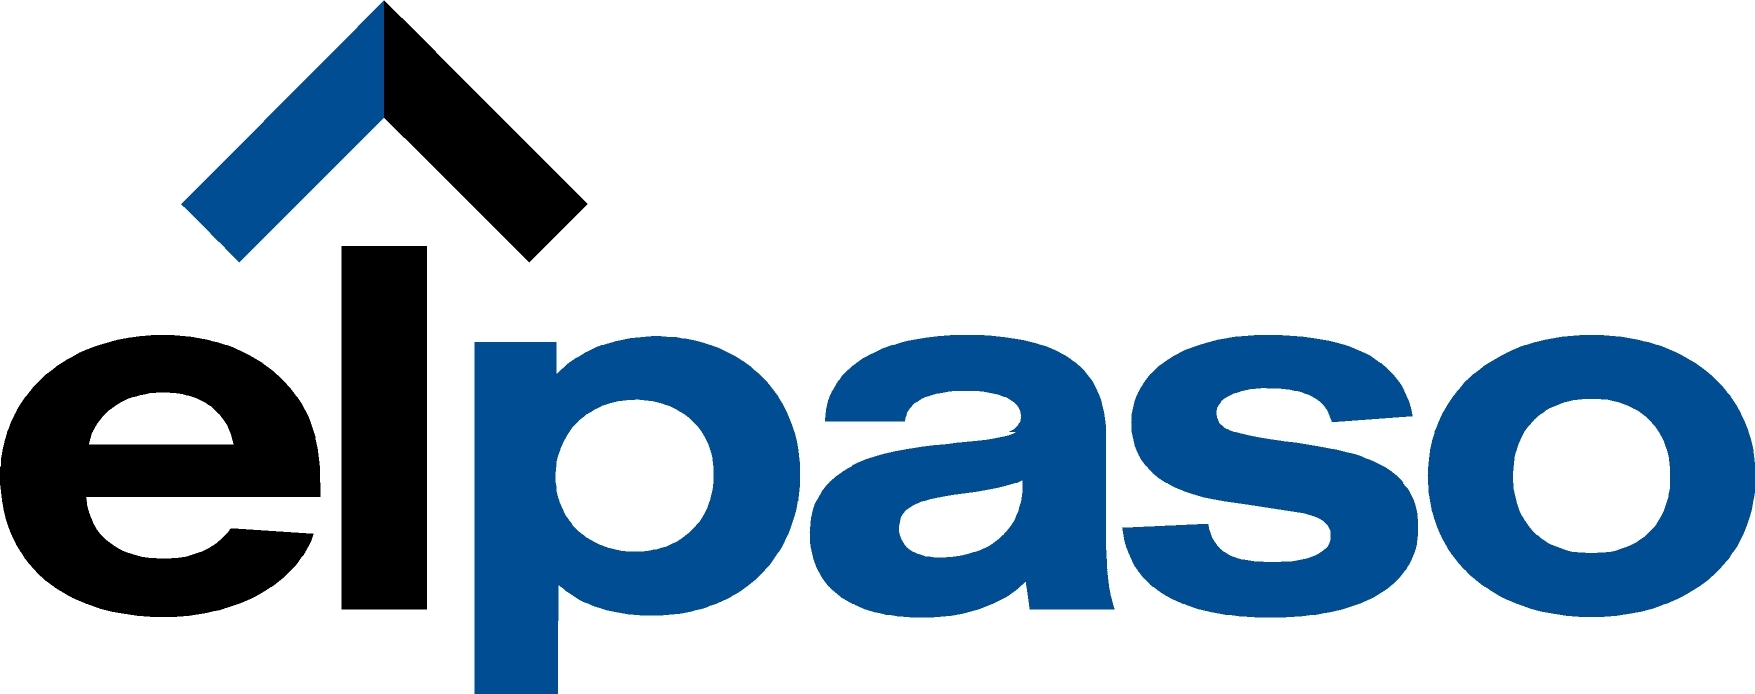 EL Paso Corporation PAC